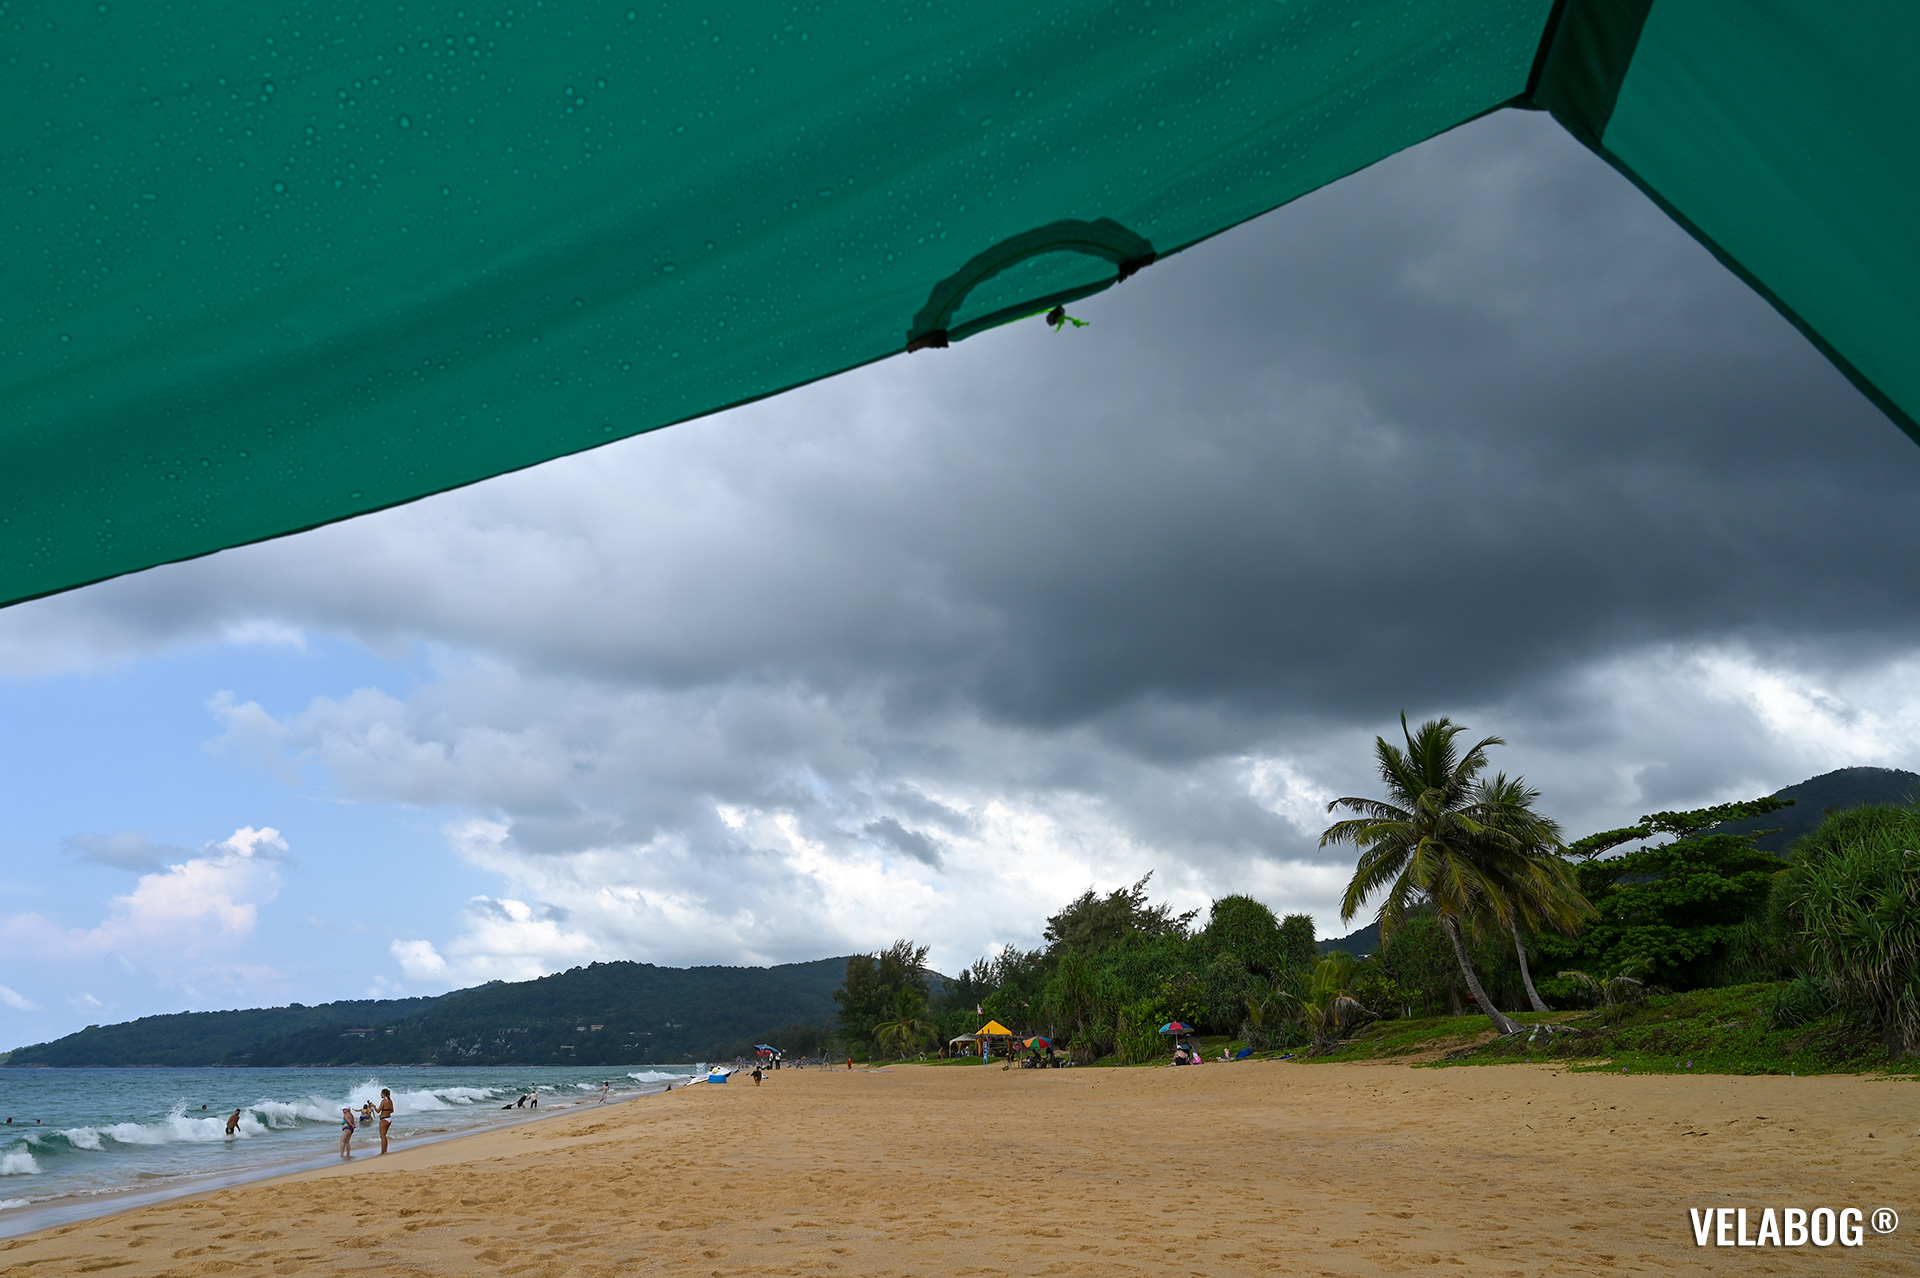 Солнечный парус Velabog «Breeze» зелёный. Лучшее укрытие от солнца и дождя на пляже. Вариант установки при слишком слабом или порывистом ветре или если ветра нет. Вид снизу, детали.